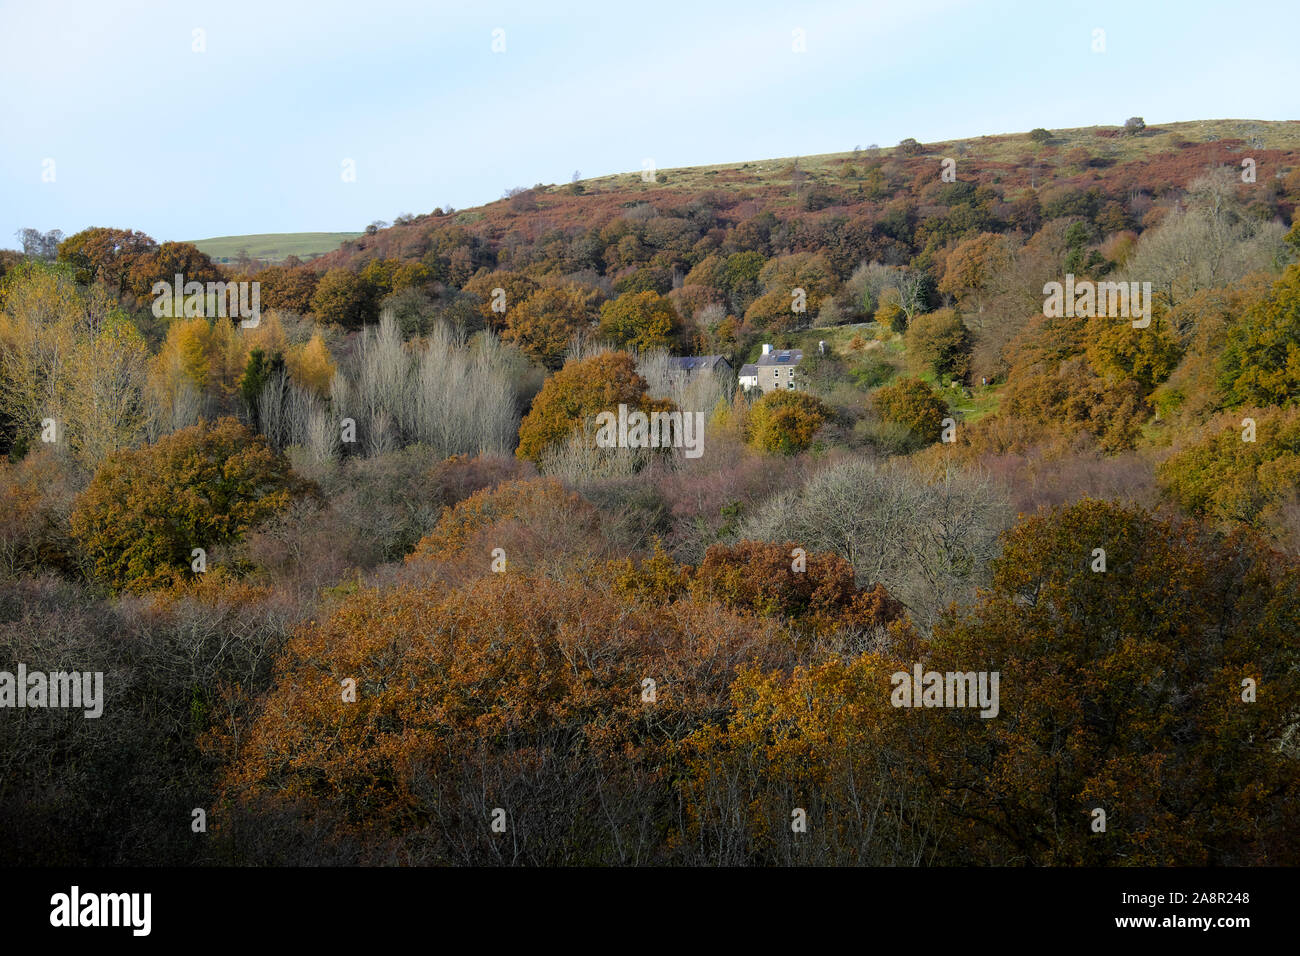 Haus von schönen sommergrünen Eichen und Wald im Herbst Farben Carmarthenshire West Wales UK KATHY DEWITT umgeben Stockfoto